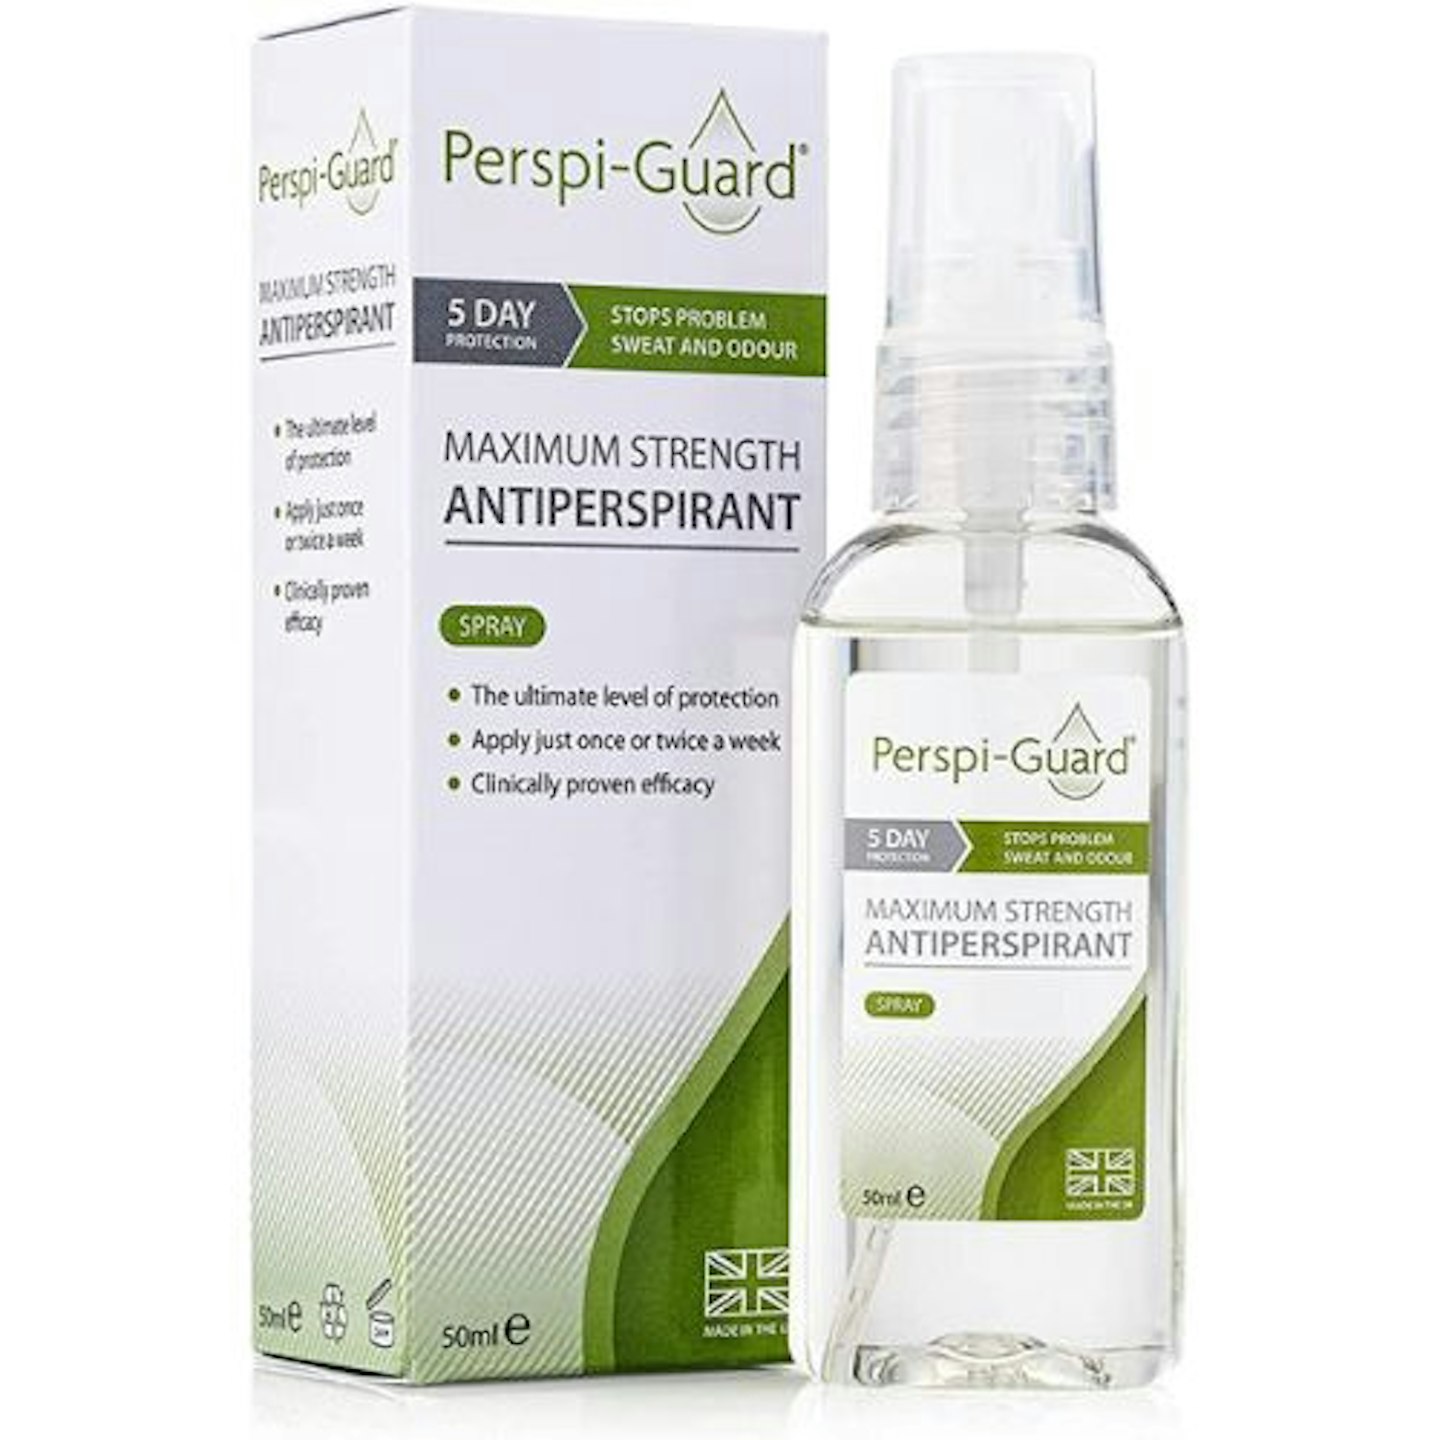 deodorant for menopause